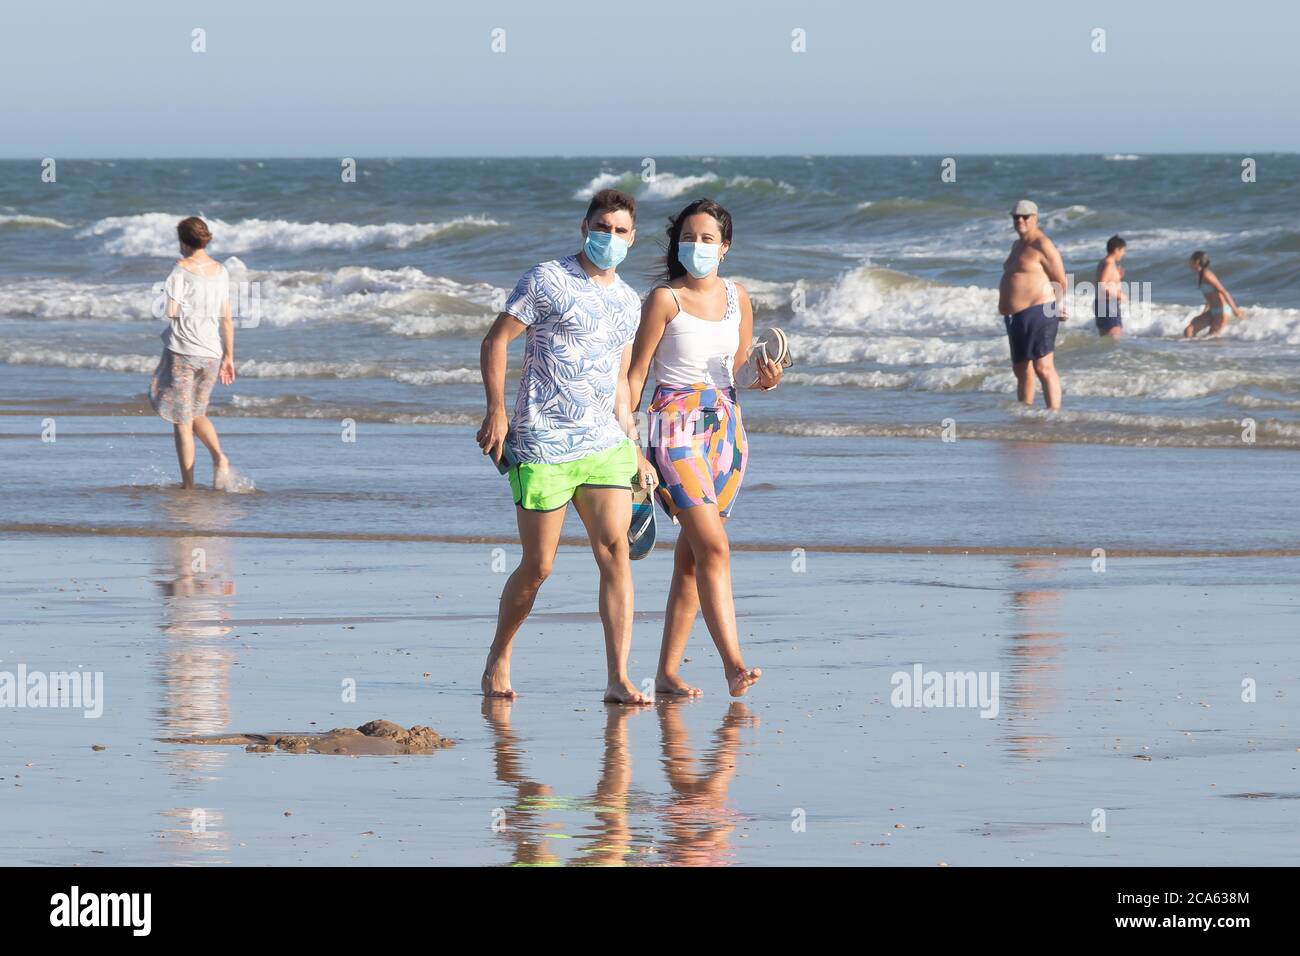 Punta Umbria, Huelva, Espagne - 2 août 2020 : couple marchant sur la plage avec des masques protecteurs ou médicaux. Nouvelle normale en Espagne avec di social Banque D'Images